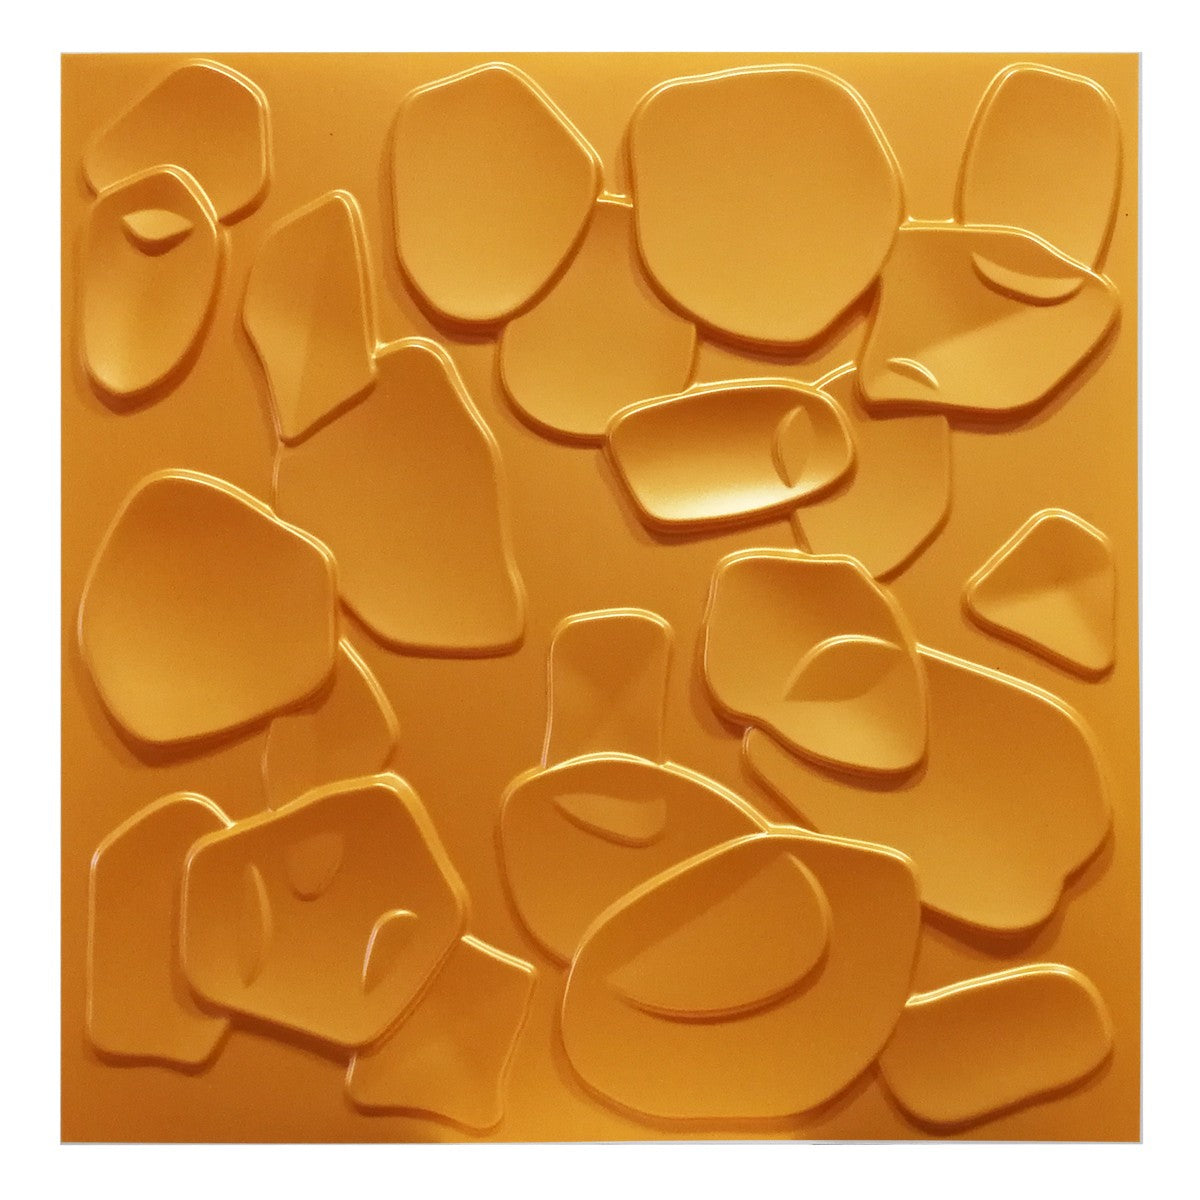 CORAL SEA giallo-metal-opaco - Pannello parete in PVC a rilievo 3D - 50cmX50cm - 1 Pz